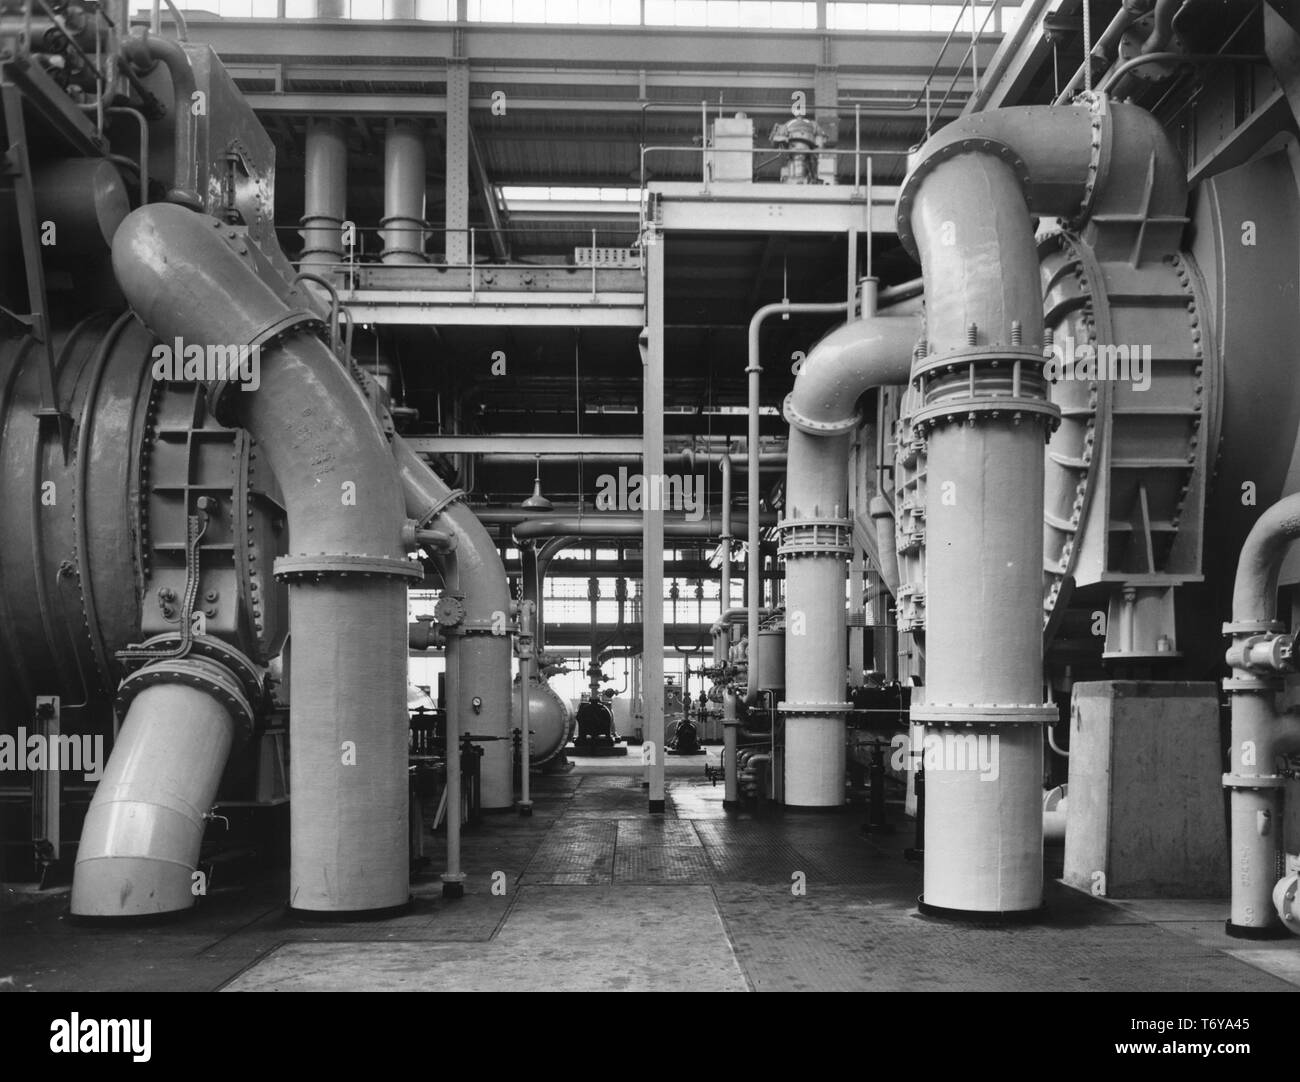 Tuyauterie massive dans le sous-sol de la turbine hall, la centrale nucléaire de Calder Hall, à Sellafield, Royaume-Uni, 1956. Image courtoisie du département américain de l'énergie. () Banque D'Images